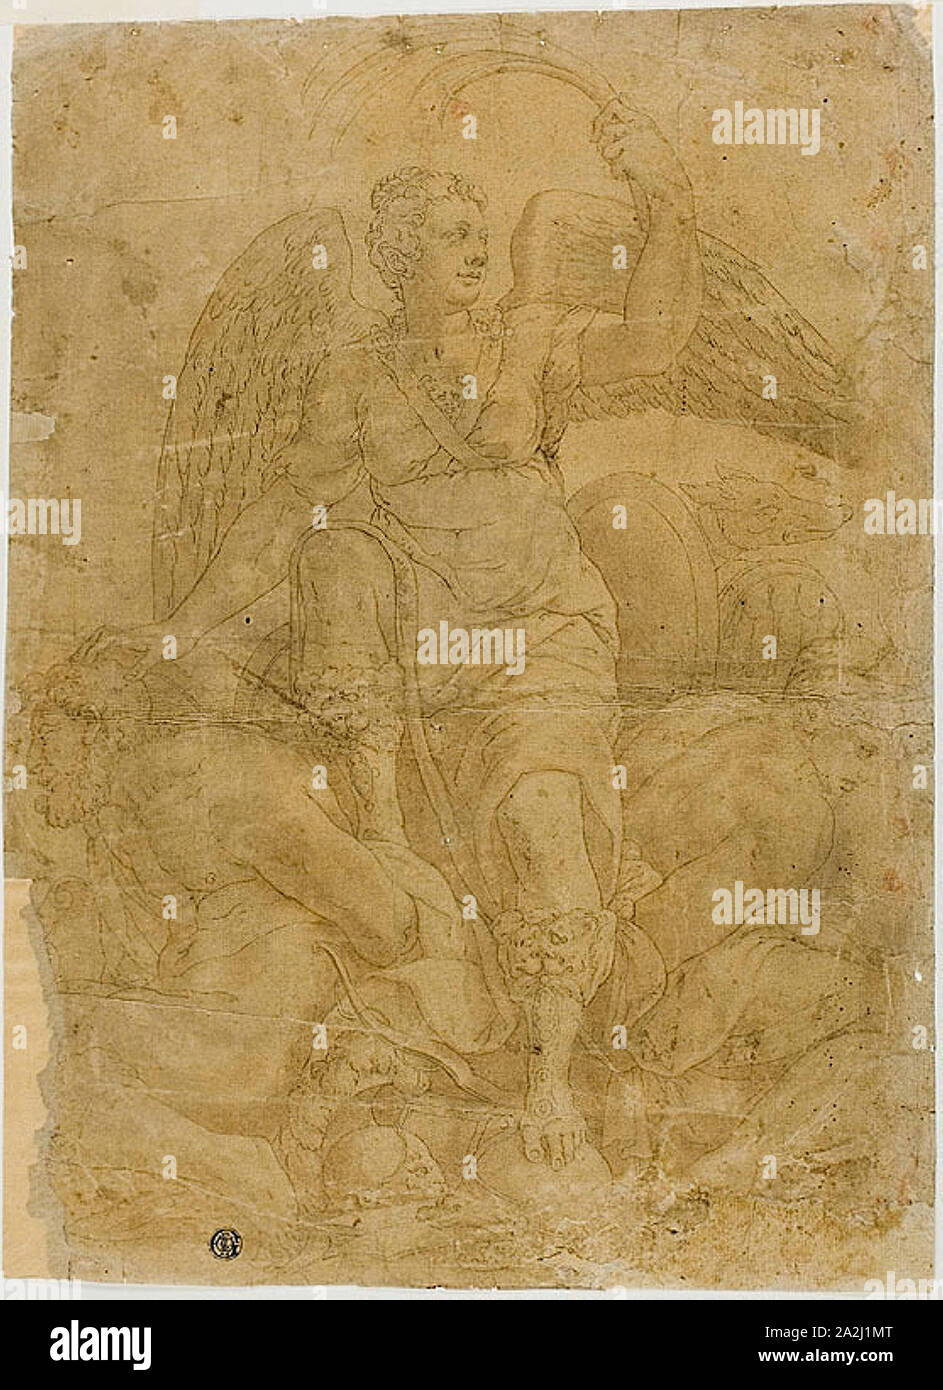 Allegoria della vittoria con due prigionieri, n.d., seguace di Giorgio Vasari, Italiano, 1511-1574, Italia, penna e inchiostro nero, con spazzola e lavaggio marrone, su tan carta vergata, 319 x 285 mm (max Foto Stock